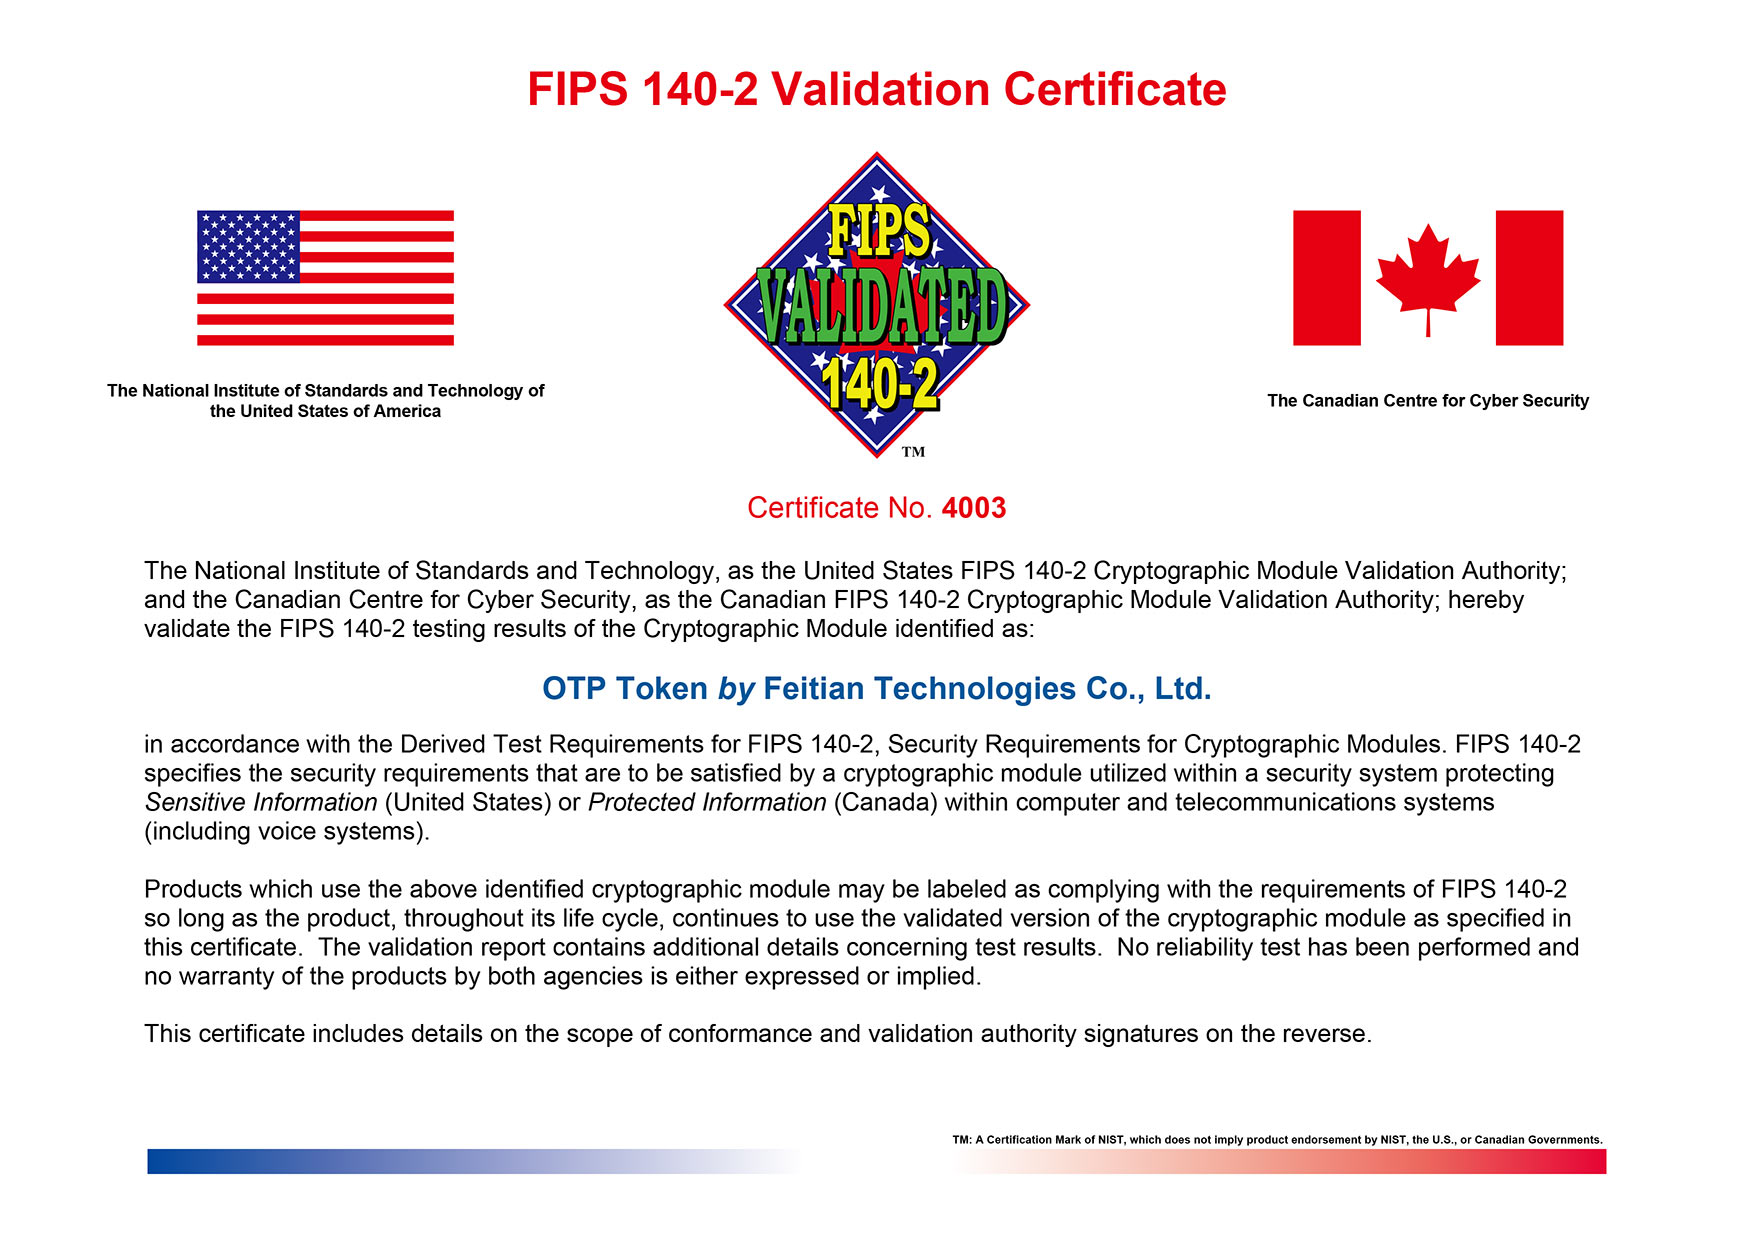 FEITIAN OTP Token FIPS 140-2 Level 2 Certification